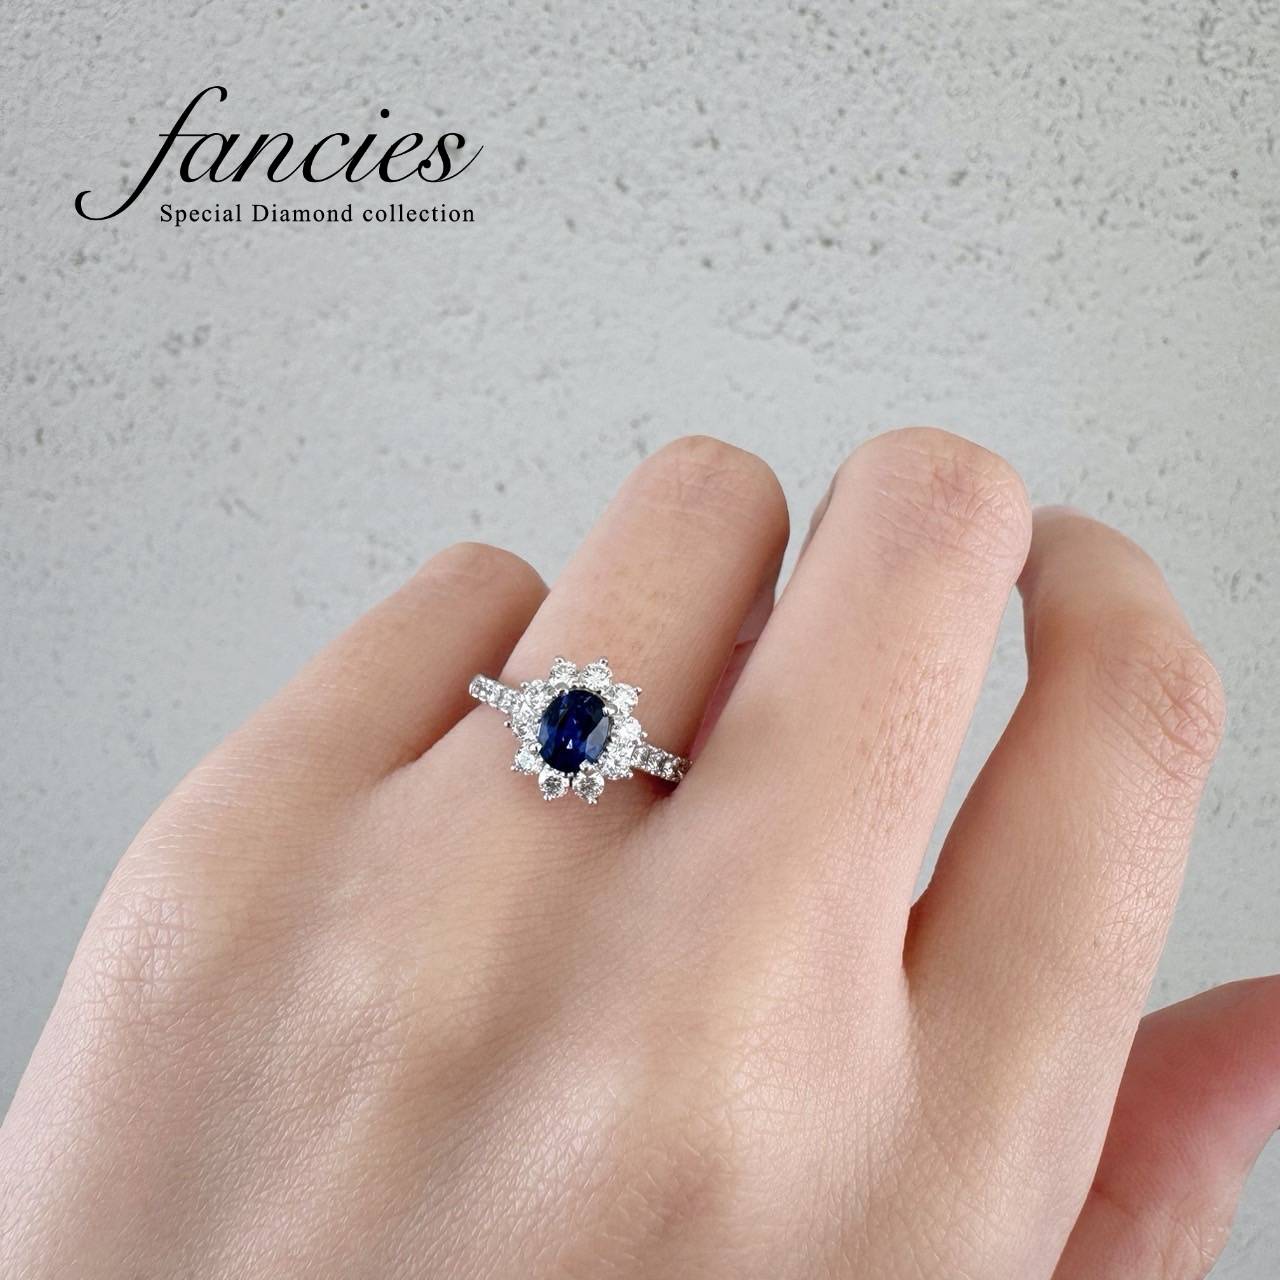 婚約指輪に人気の美しいブルーサファイアを使用したダイヤモンドヘイローリング